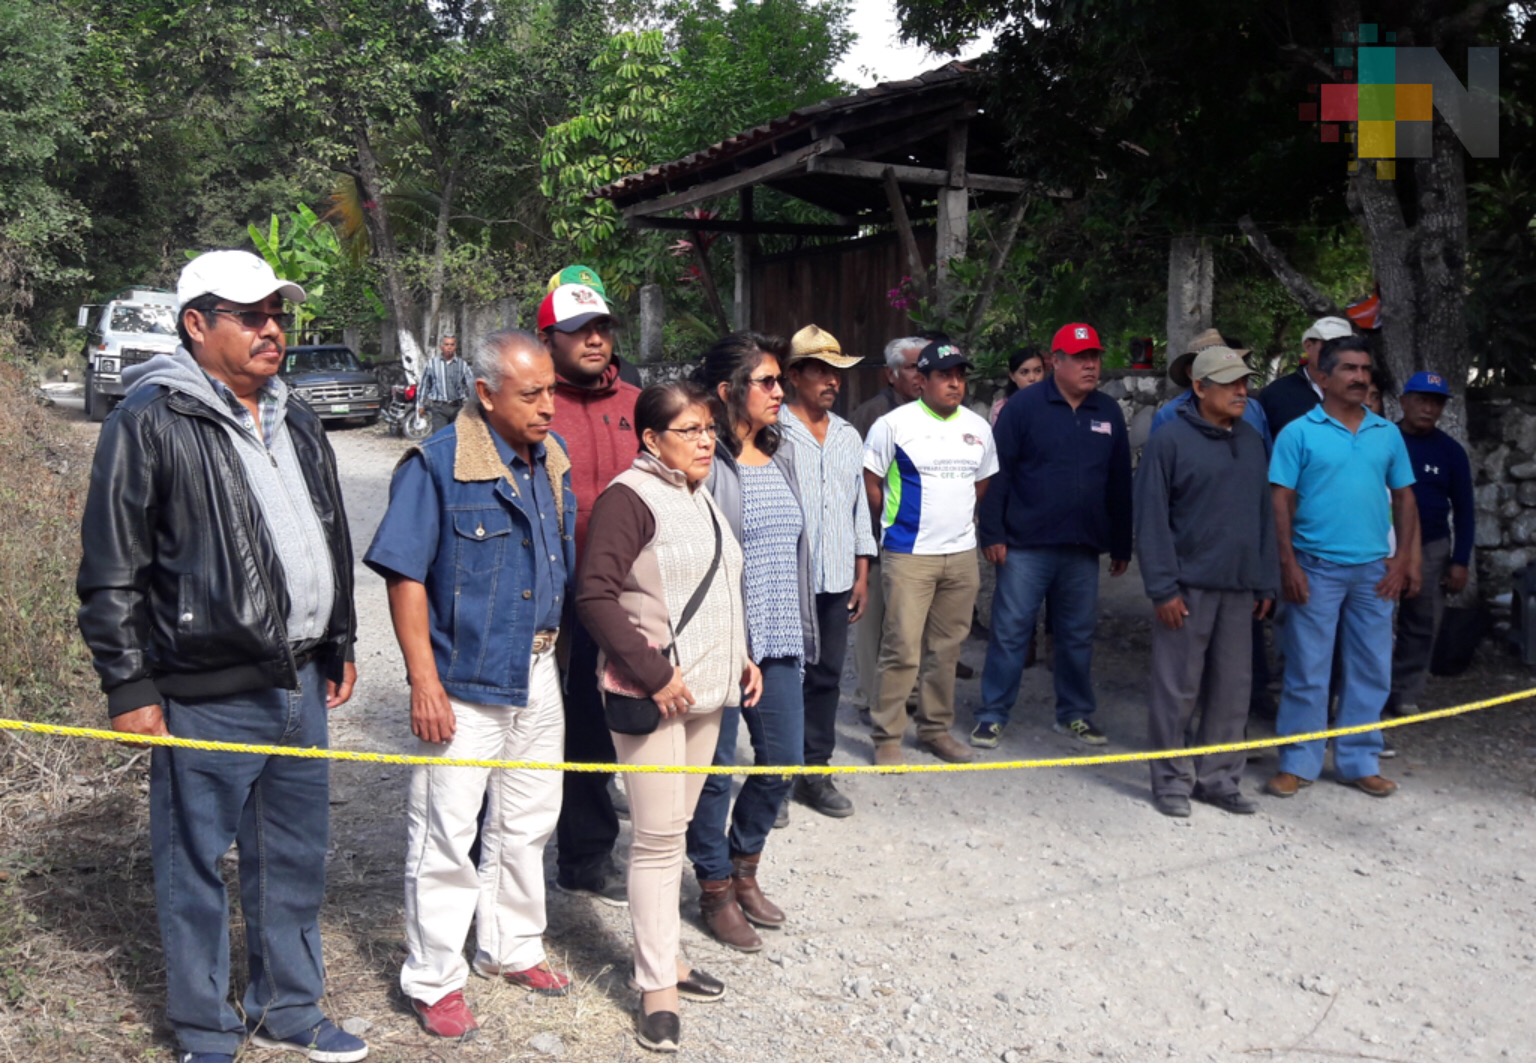 Habitantes de Apazapan bloquean accesos a cementera Moctezuma por incumplir acuerdos